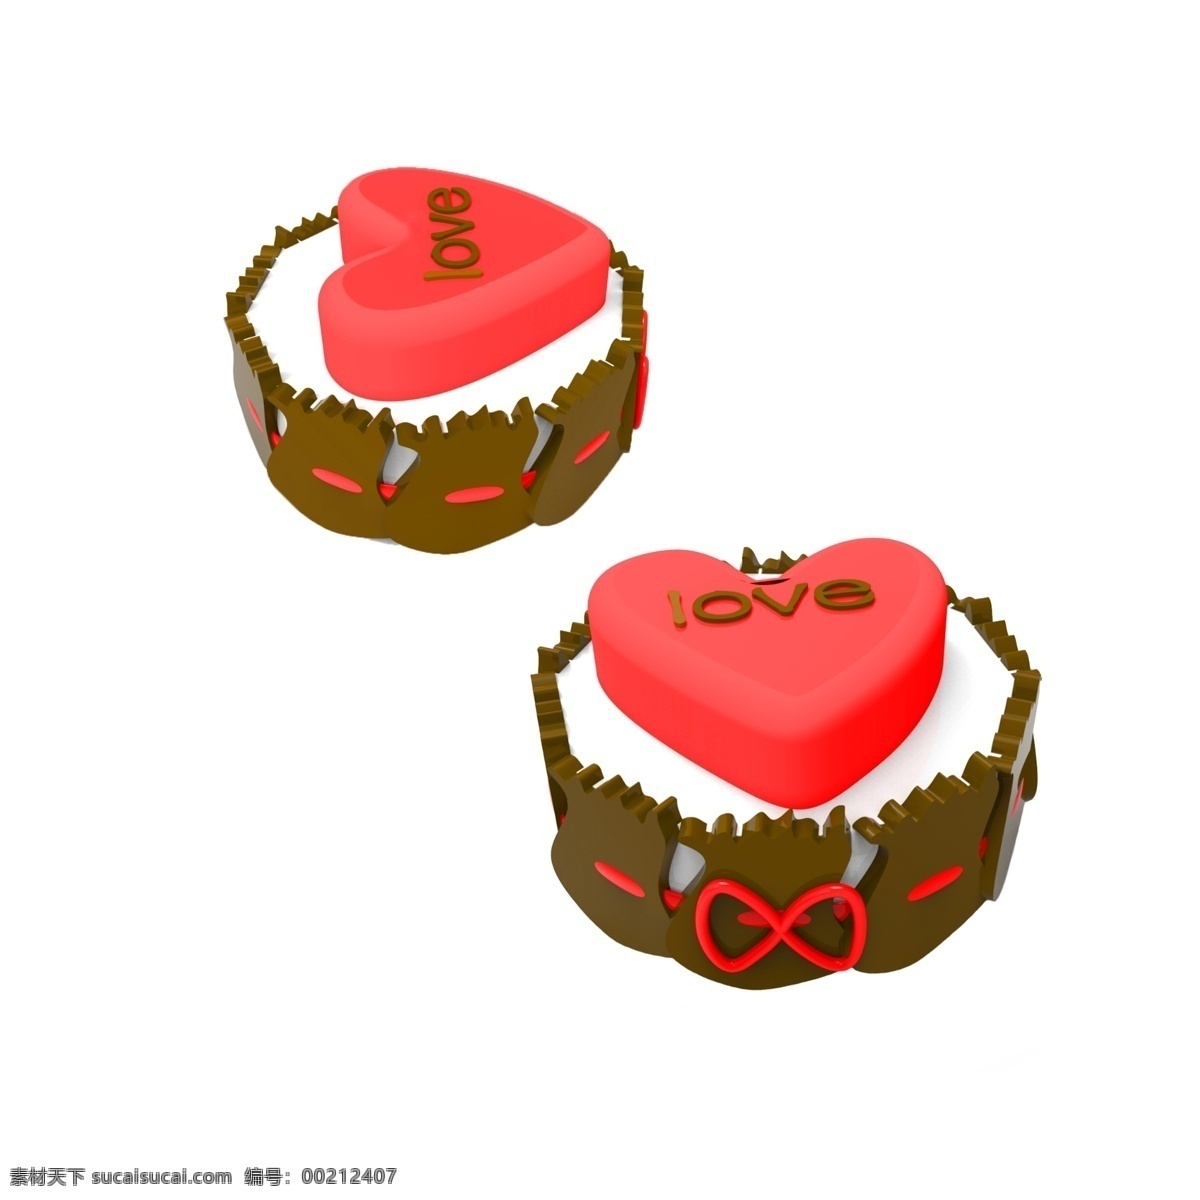 爱情 love 心形 蛋糕 心形蛋糕 爱心 红心 巧克力 女王节礼物 爱心礼物 情人节礼物 甜点 食物